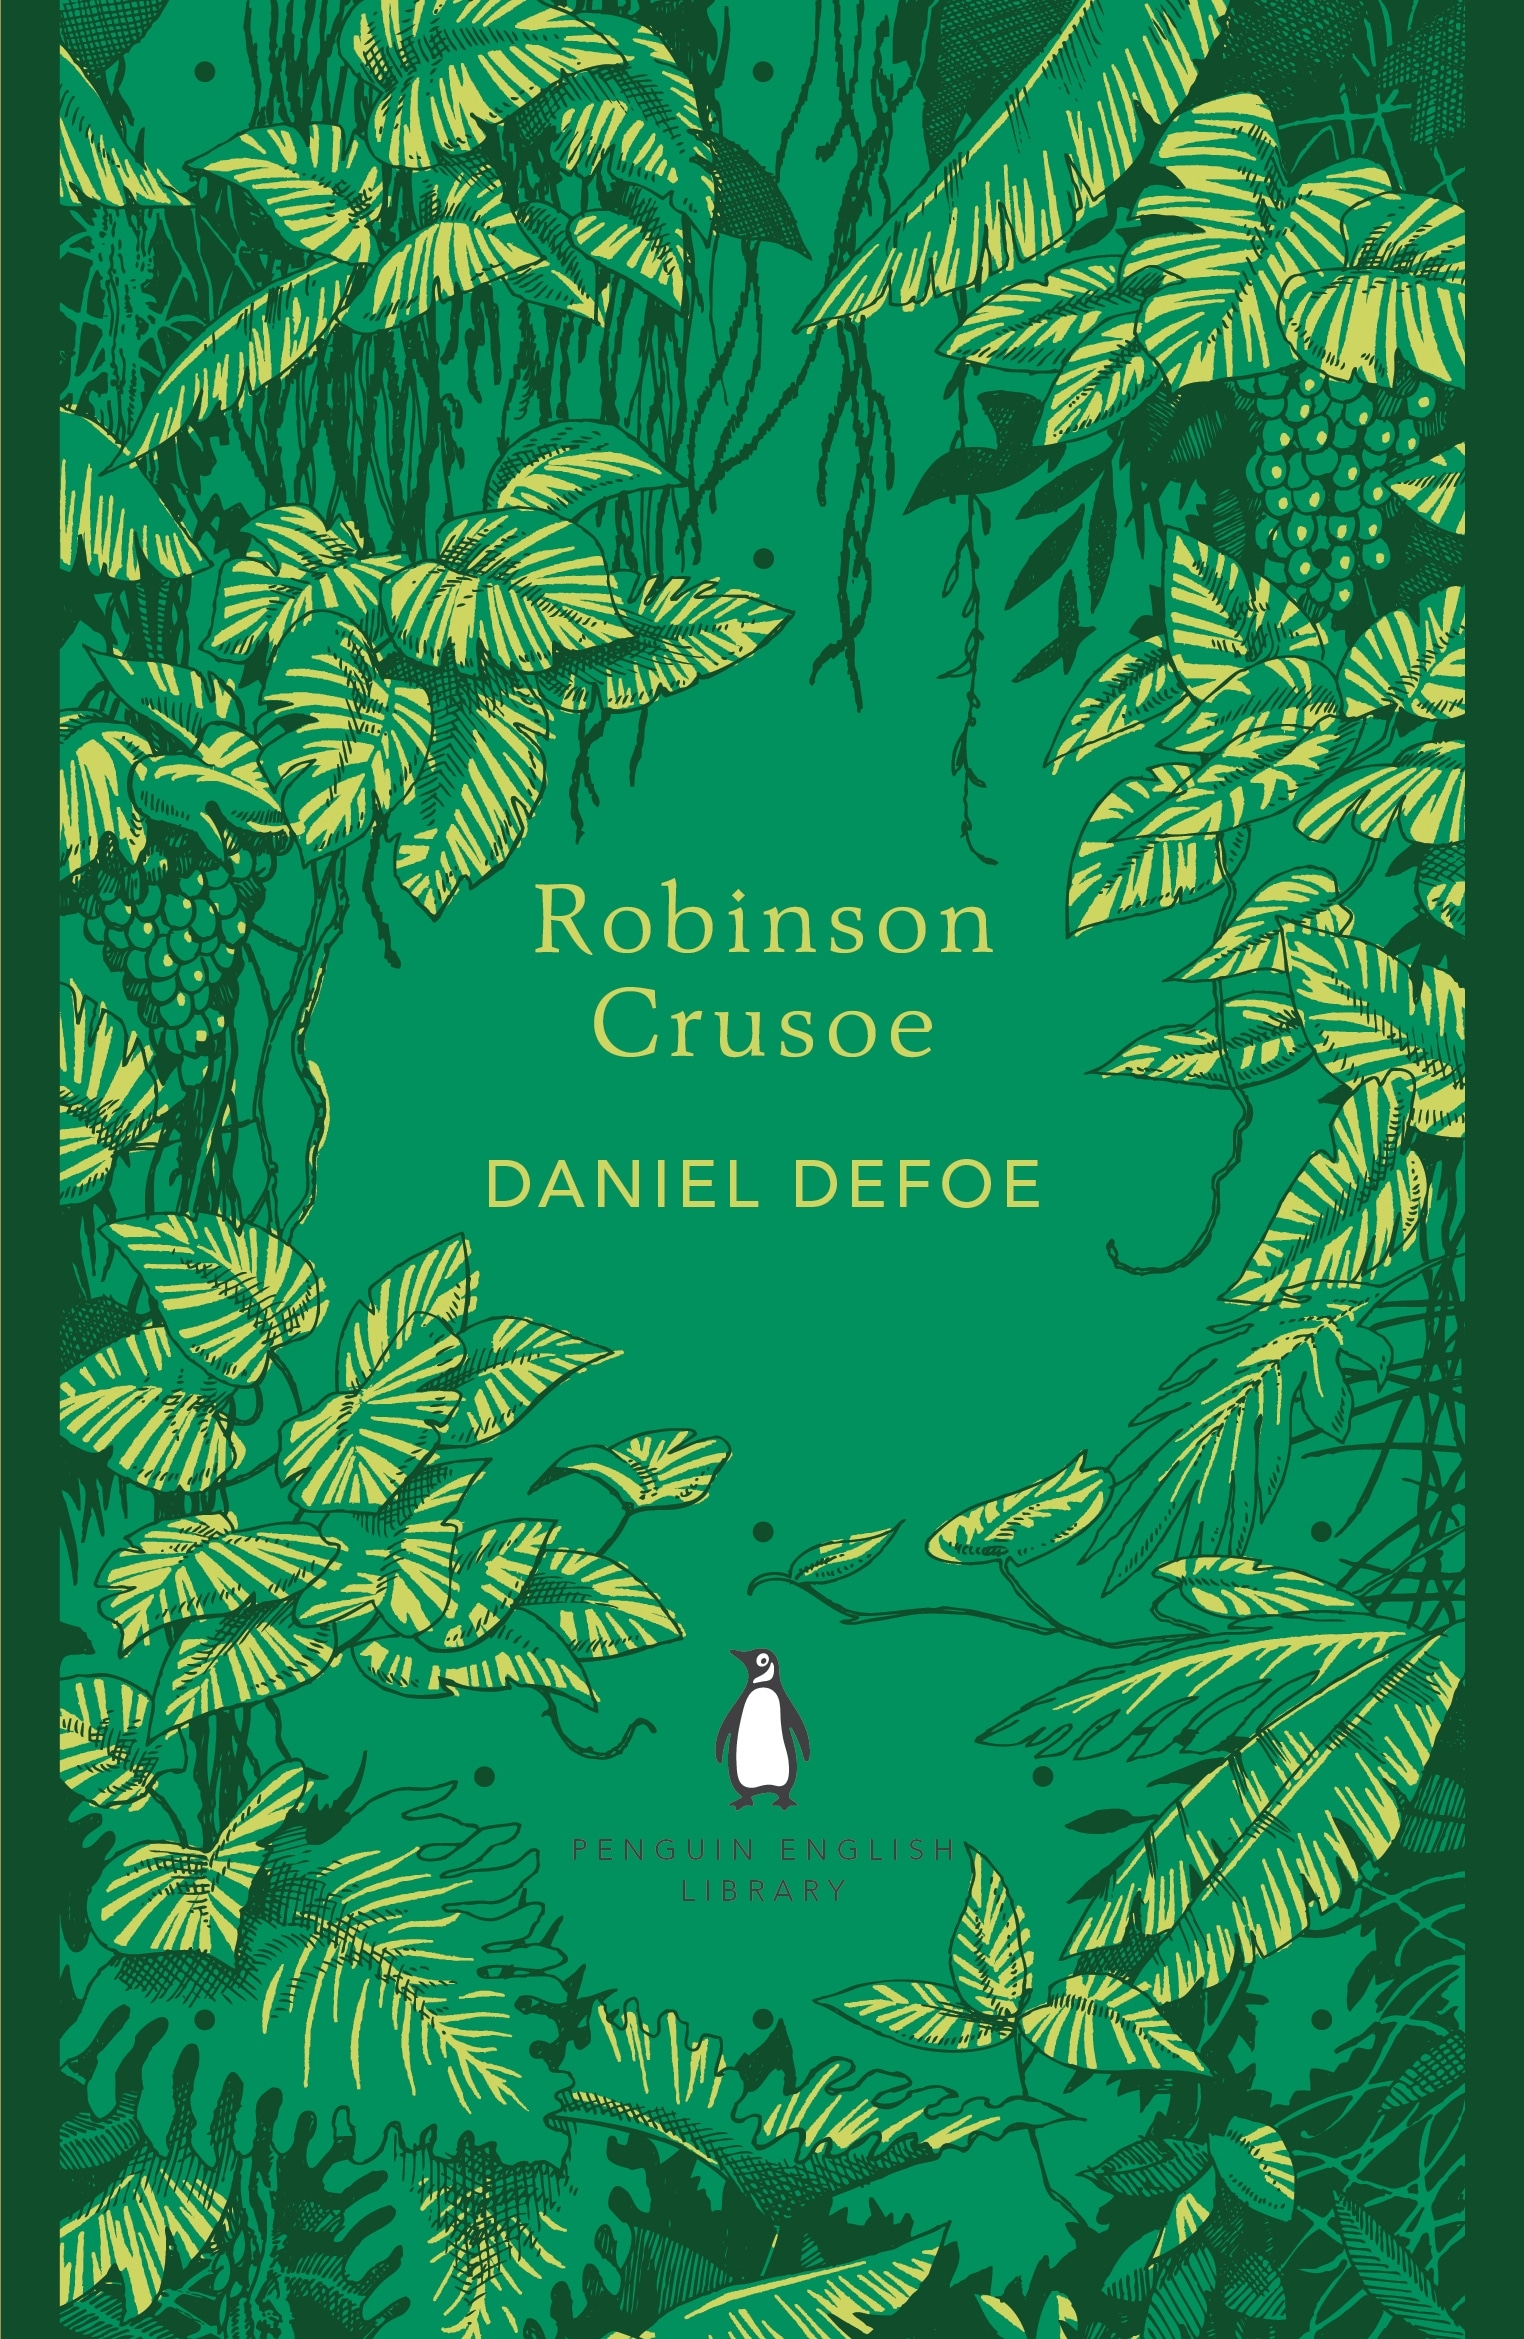 Book “Robinson Crusoe” by Daniel Defoe — December 6, 2012